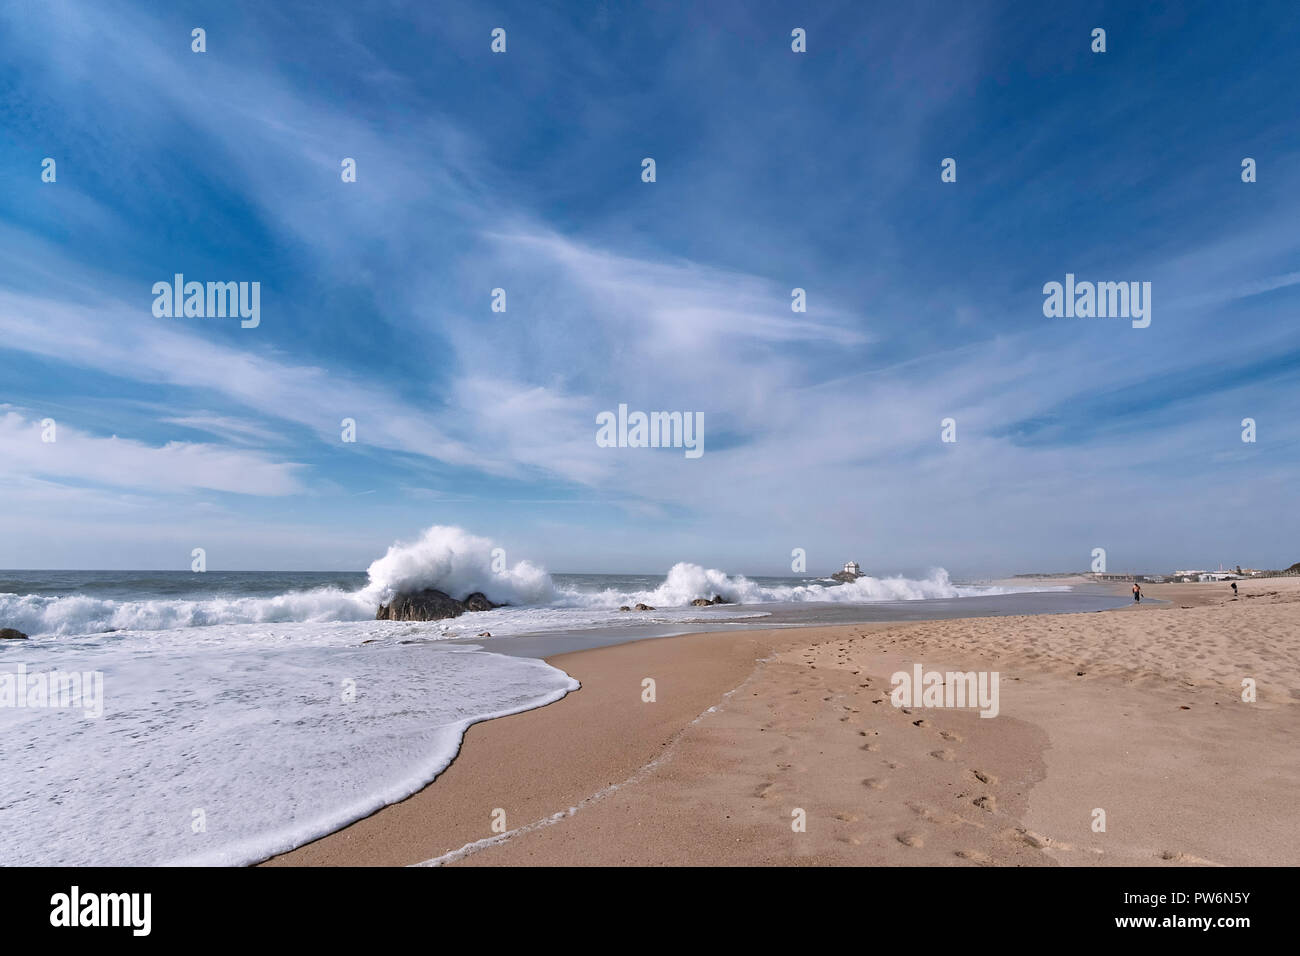 Paisaje de playa de arena, el cielo azul con algunas nubes, olas fuertes golpes contra las rocas a lo largo de la costa, un diente a una capilla en el extremo Foto de stock